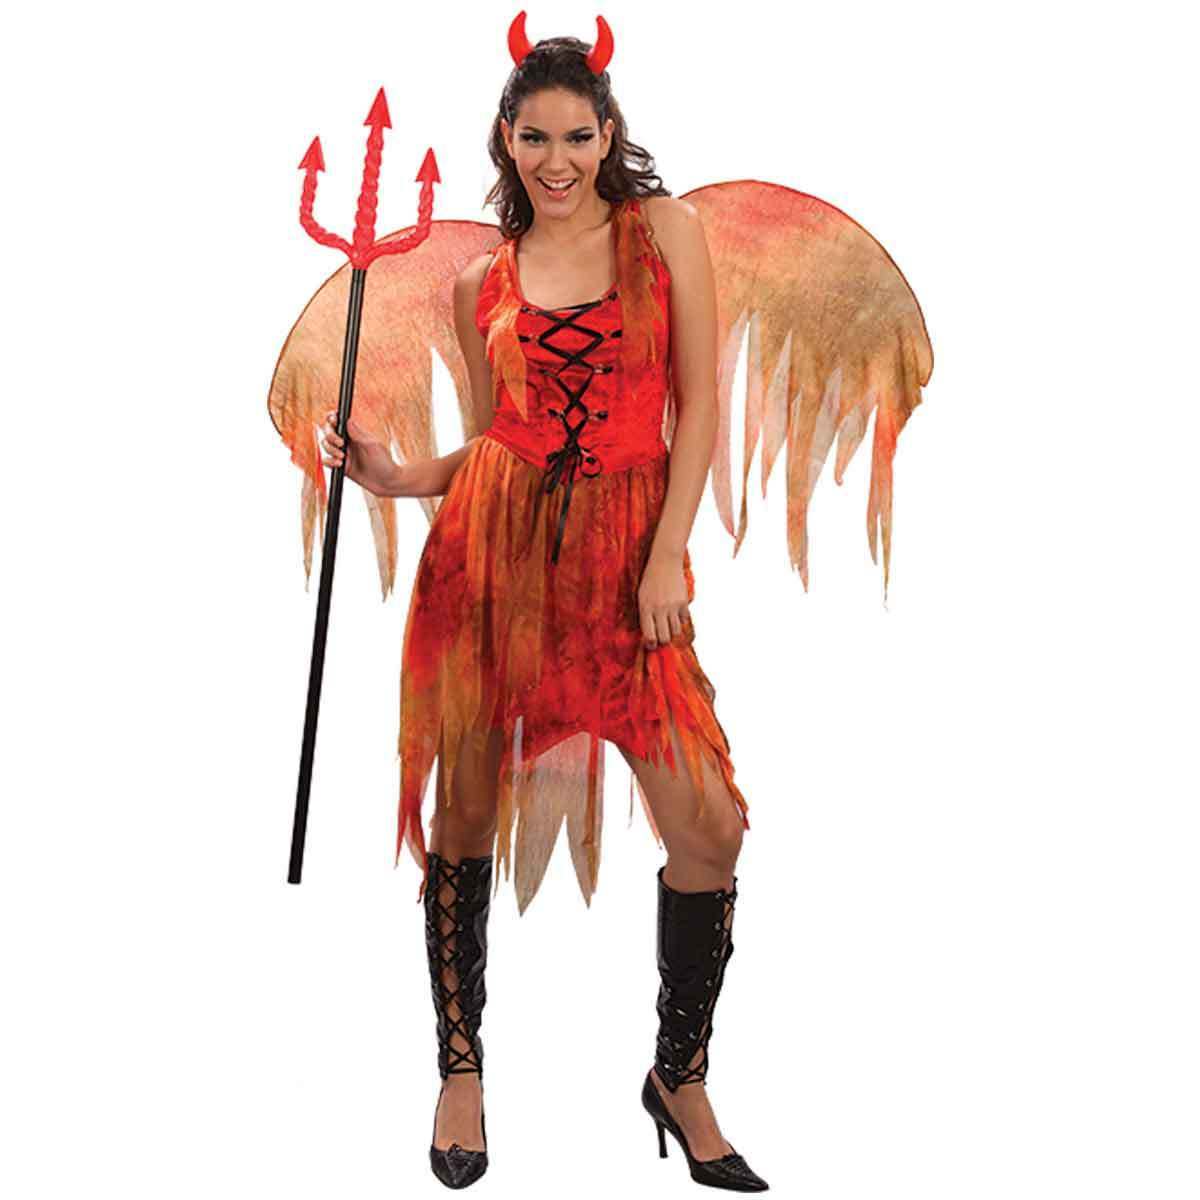 Ladies Devil Halloween Costume.